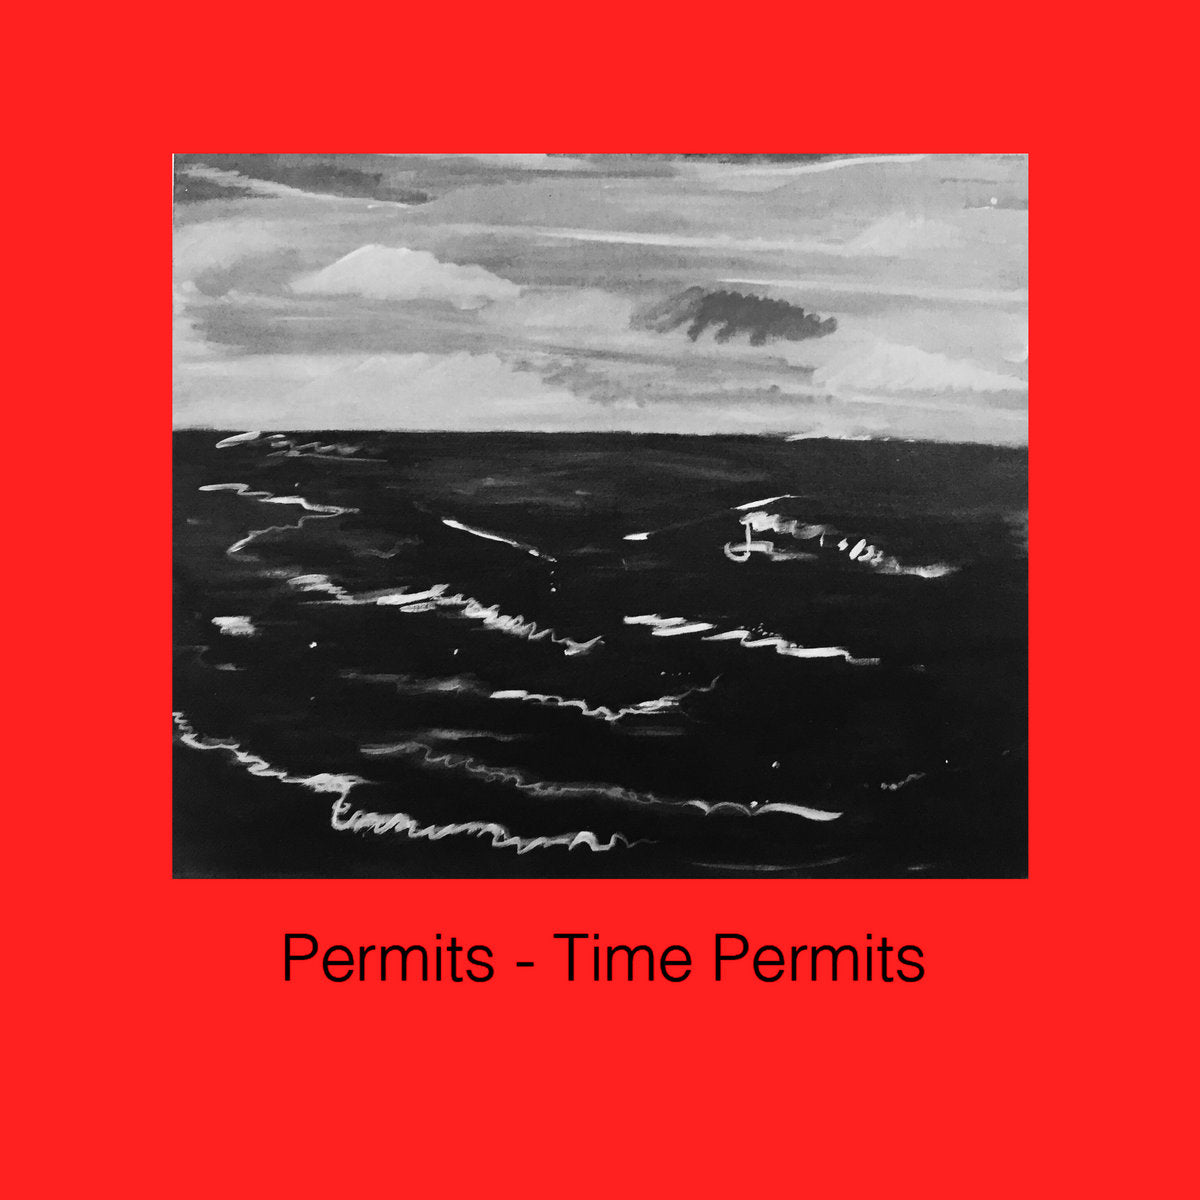 PERMITS - "TIME PERMITS" CS